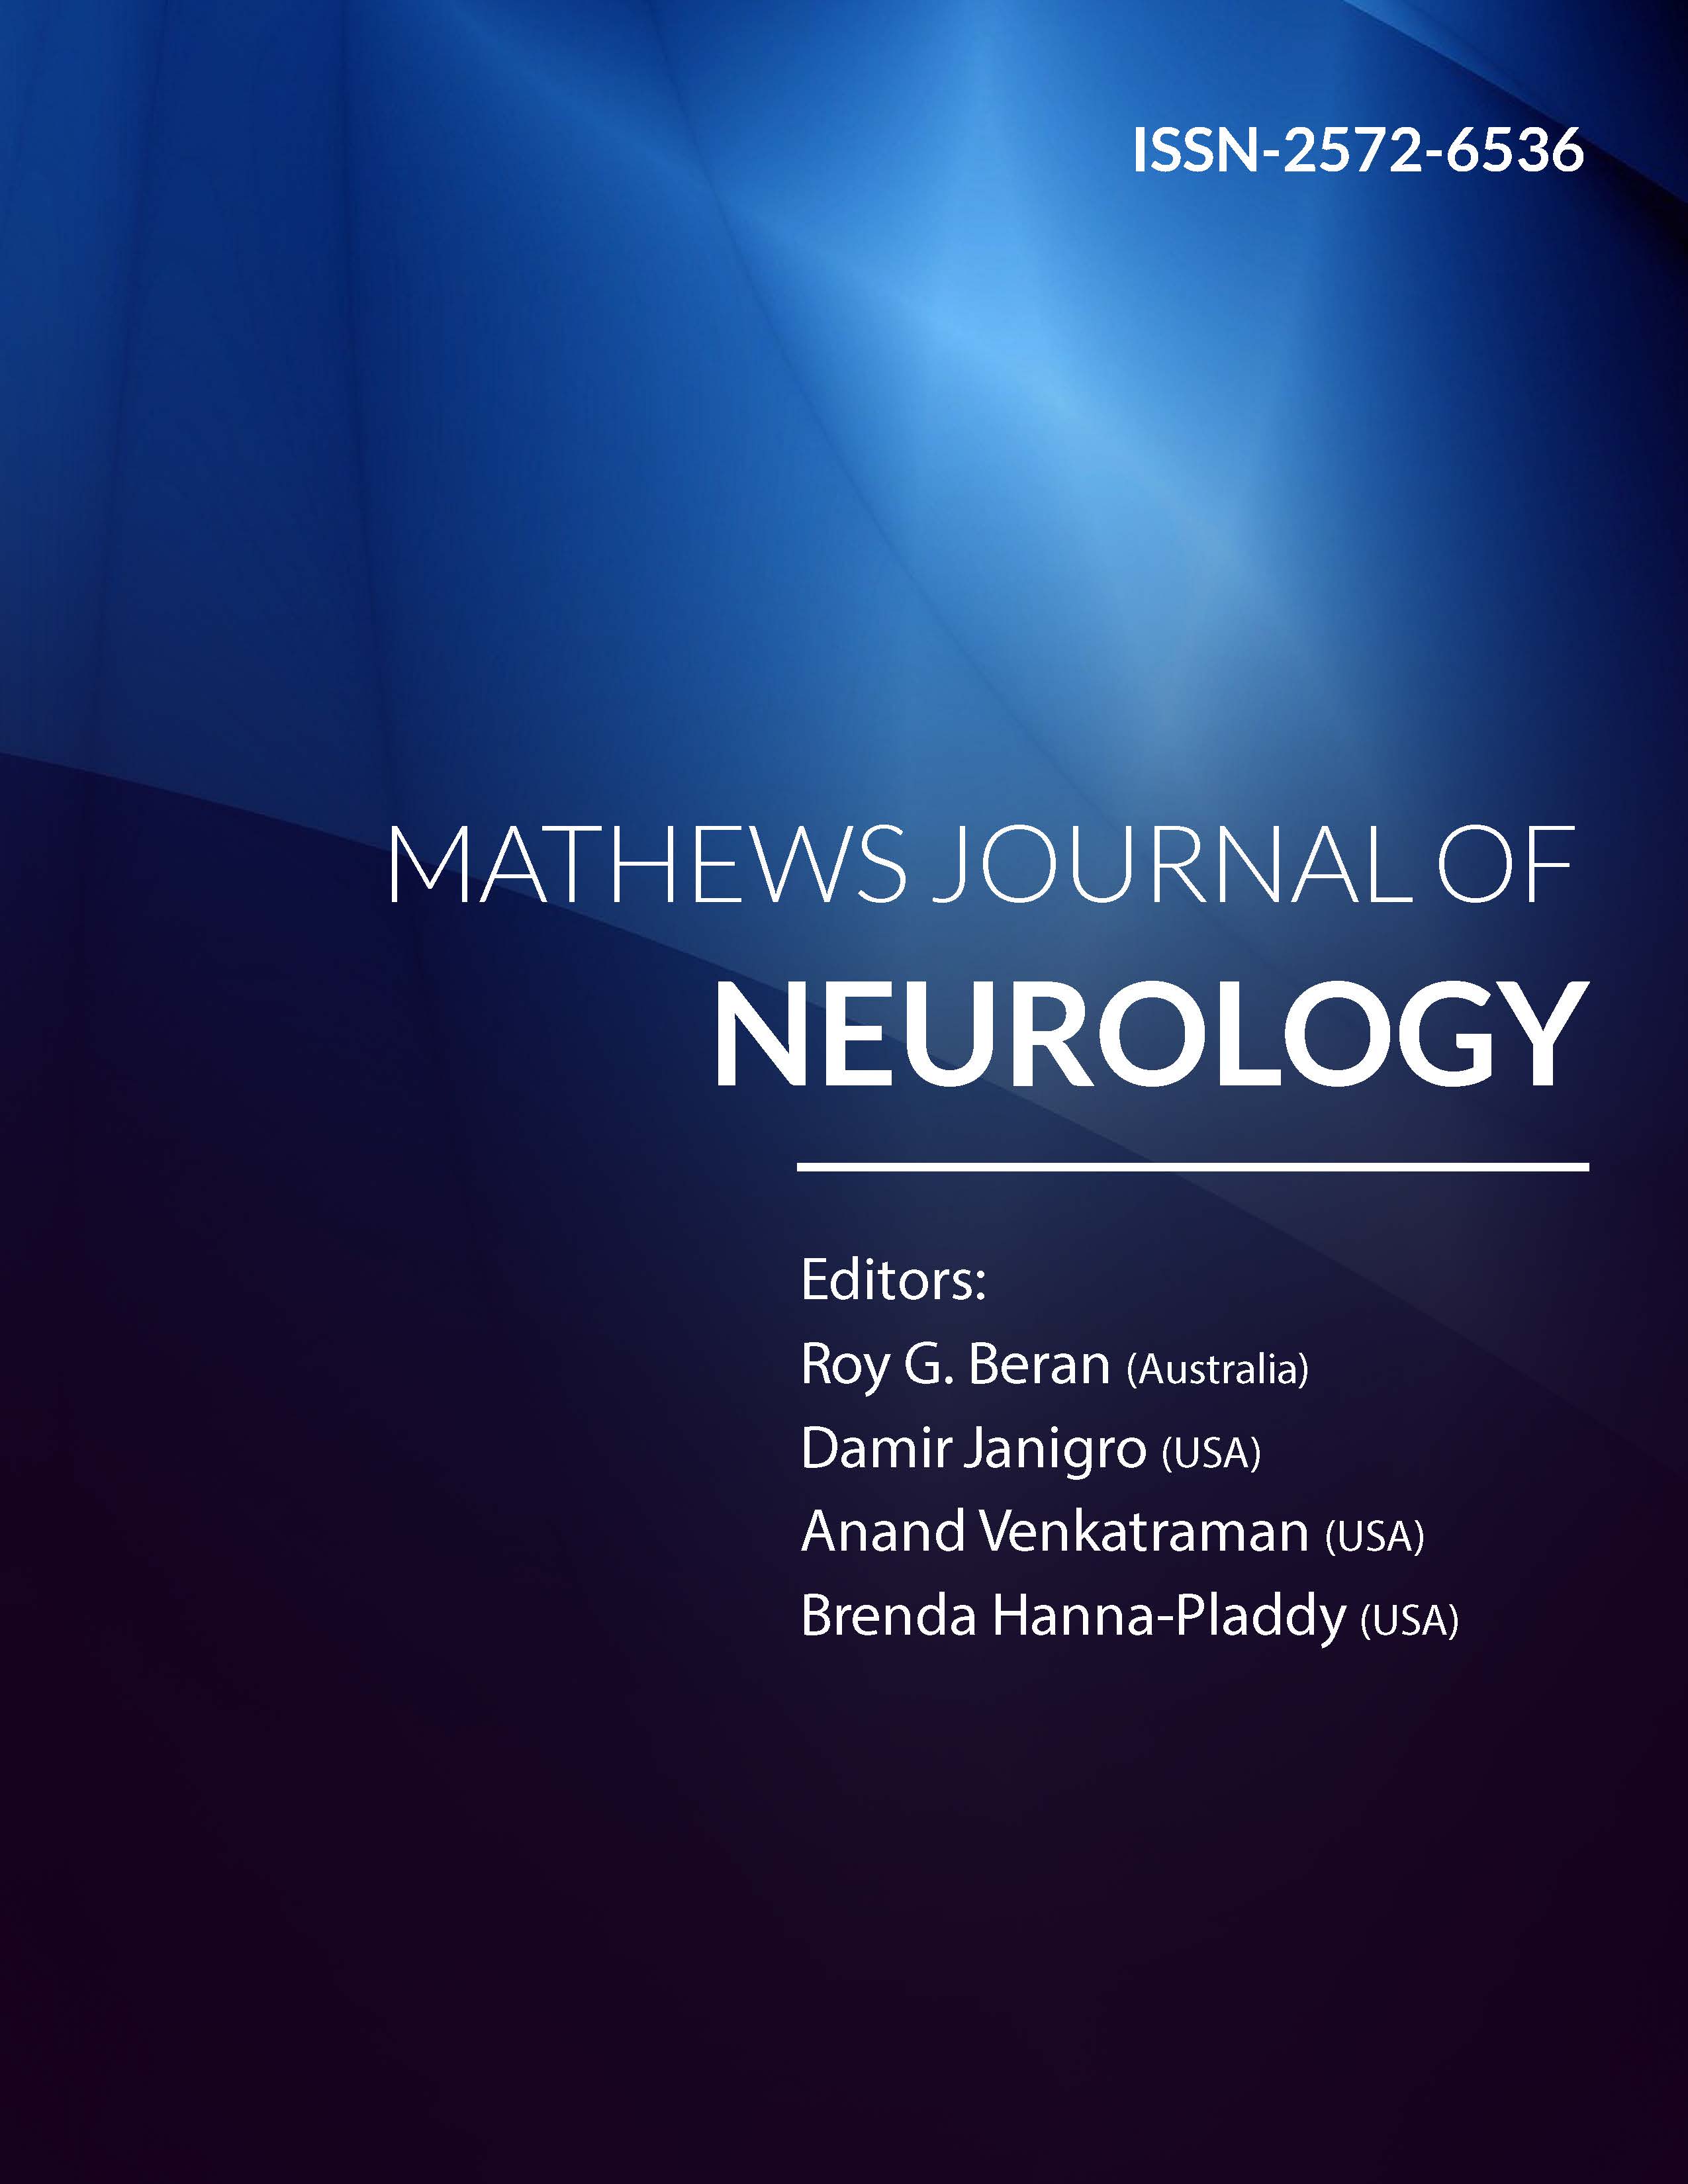 Mathews Journal of Neurology